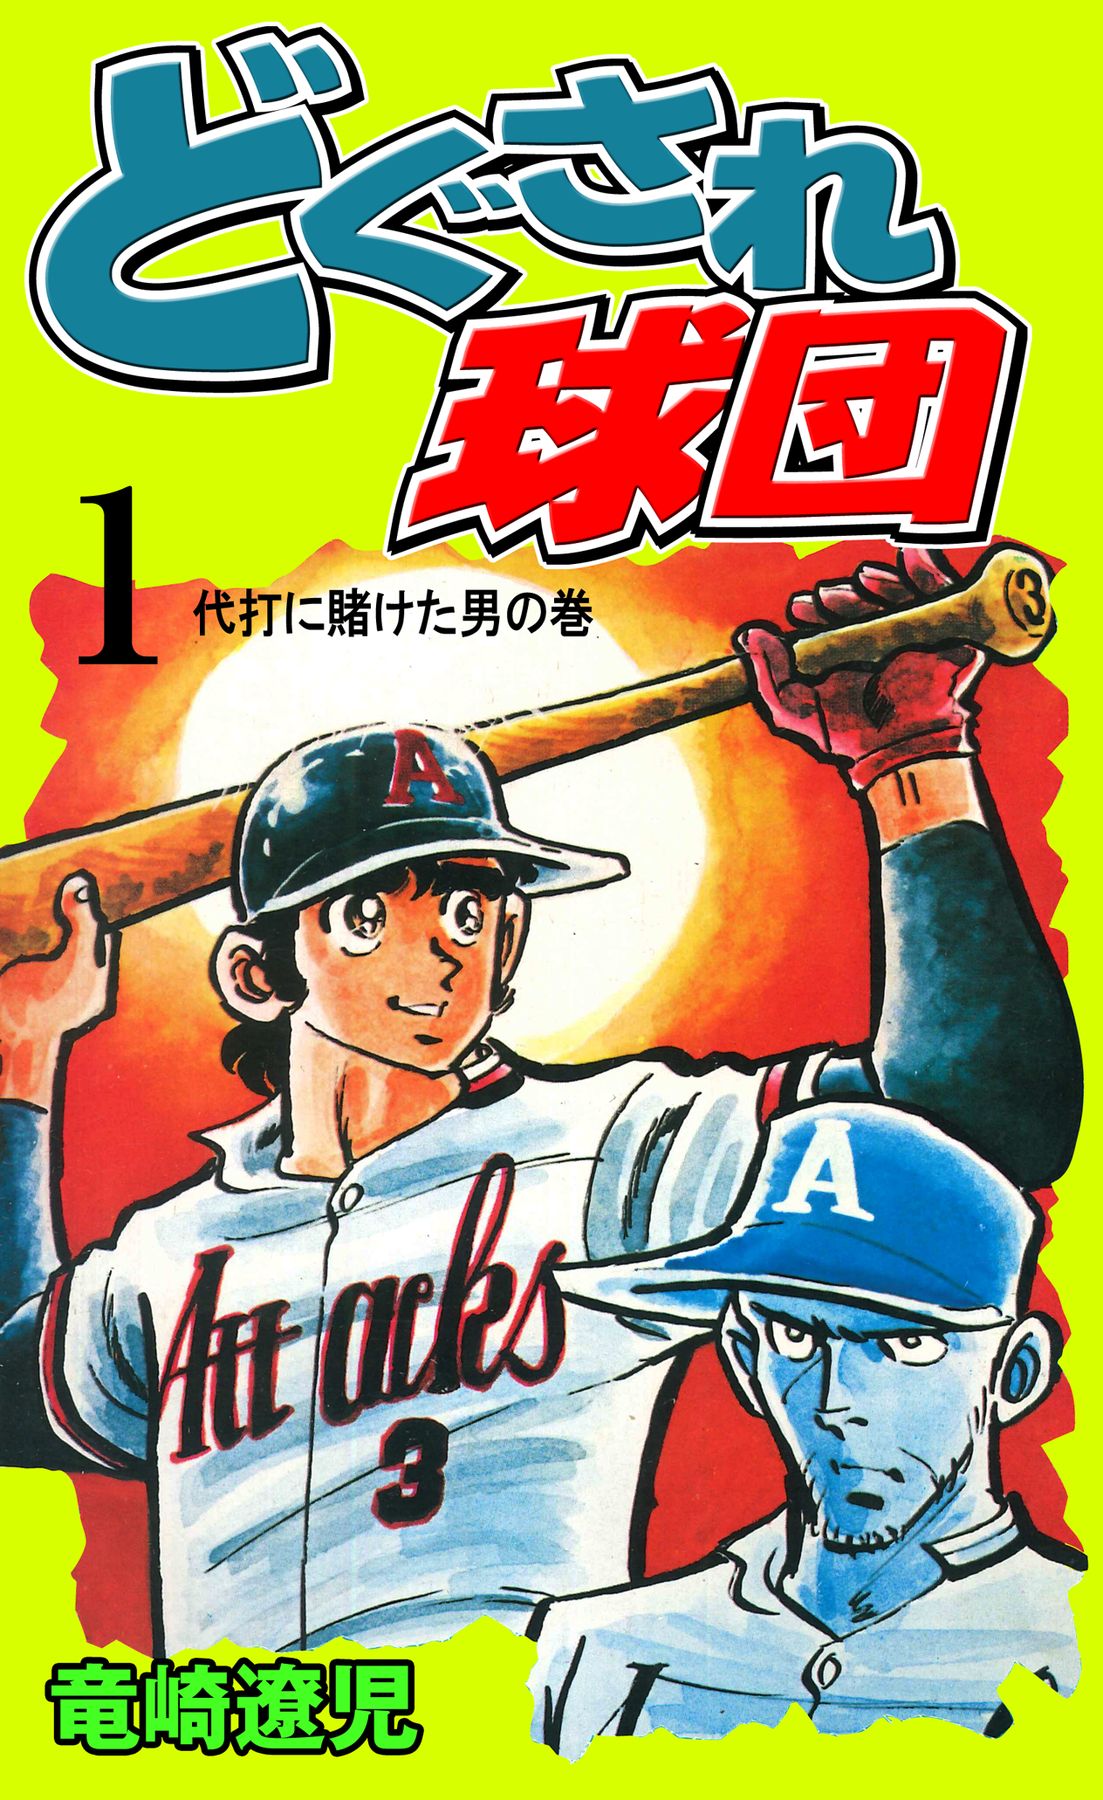 どぐされ球団 全19巻 全初版 竜崎遼児 - 漫画、コミック